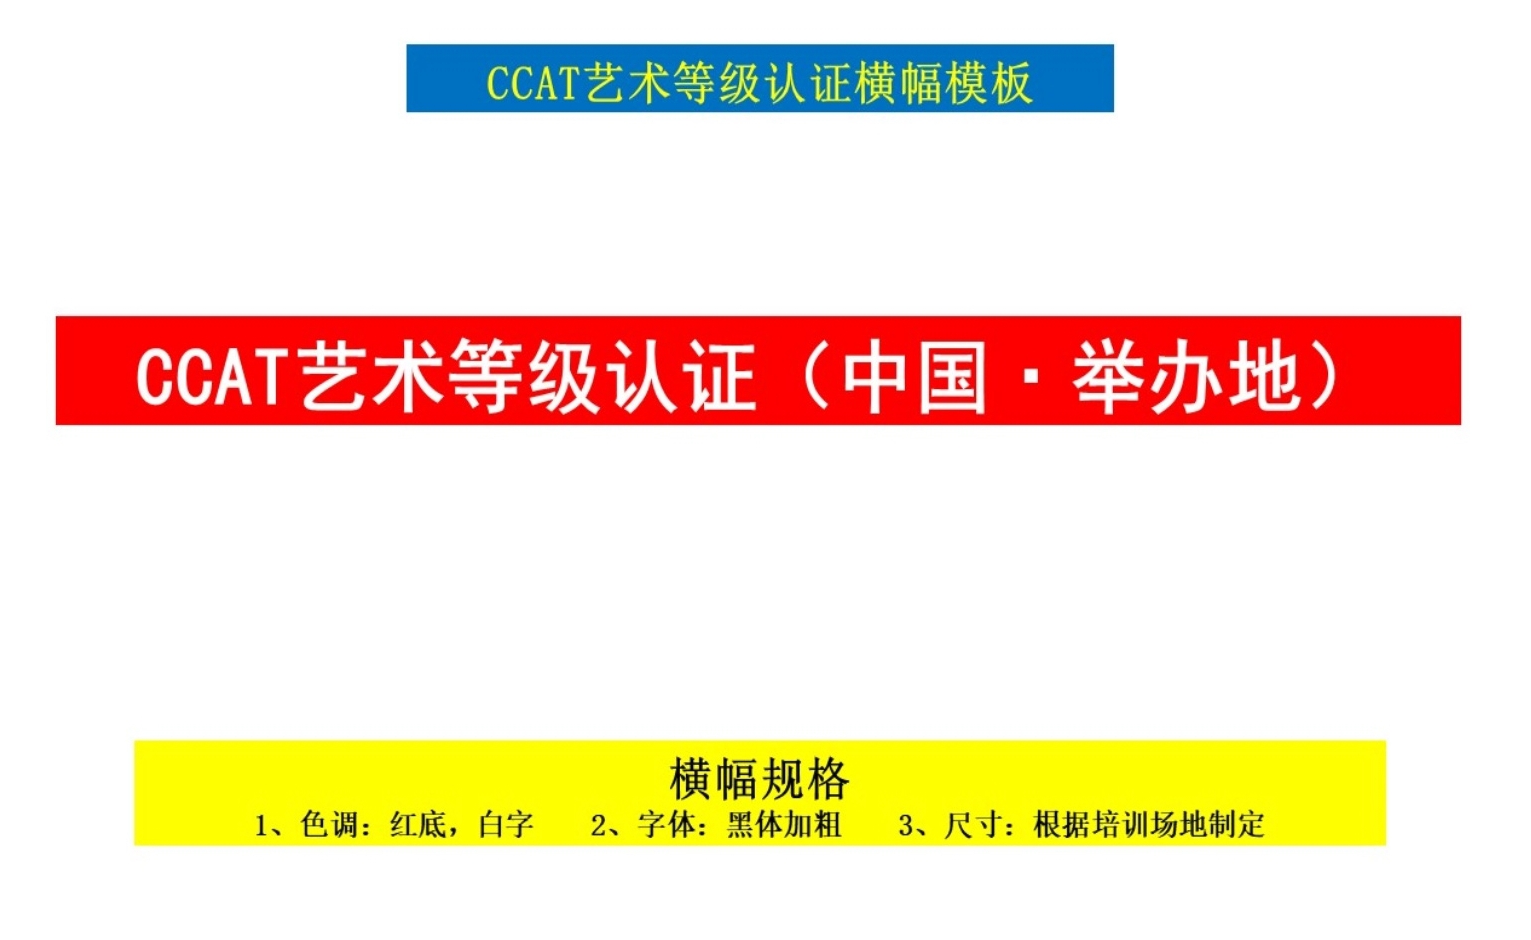 CCAT艺术等级认证横幅模板